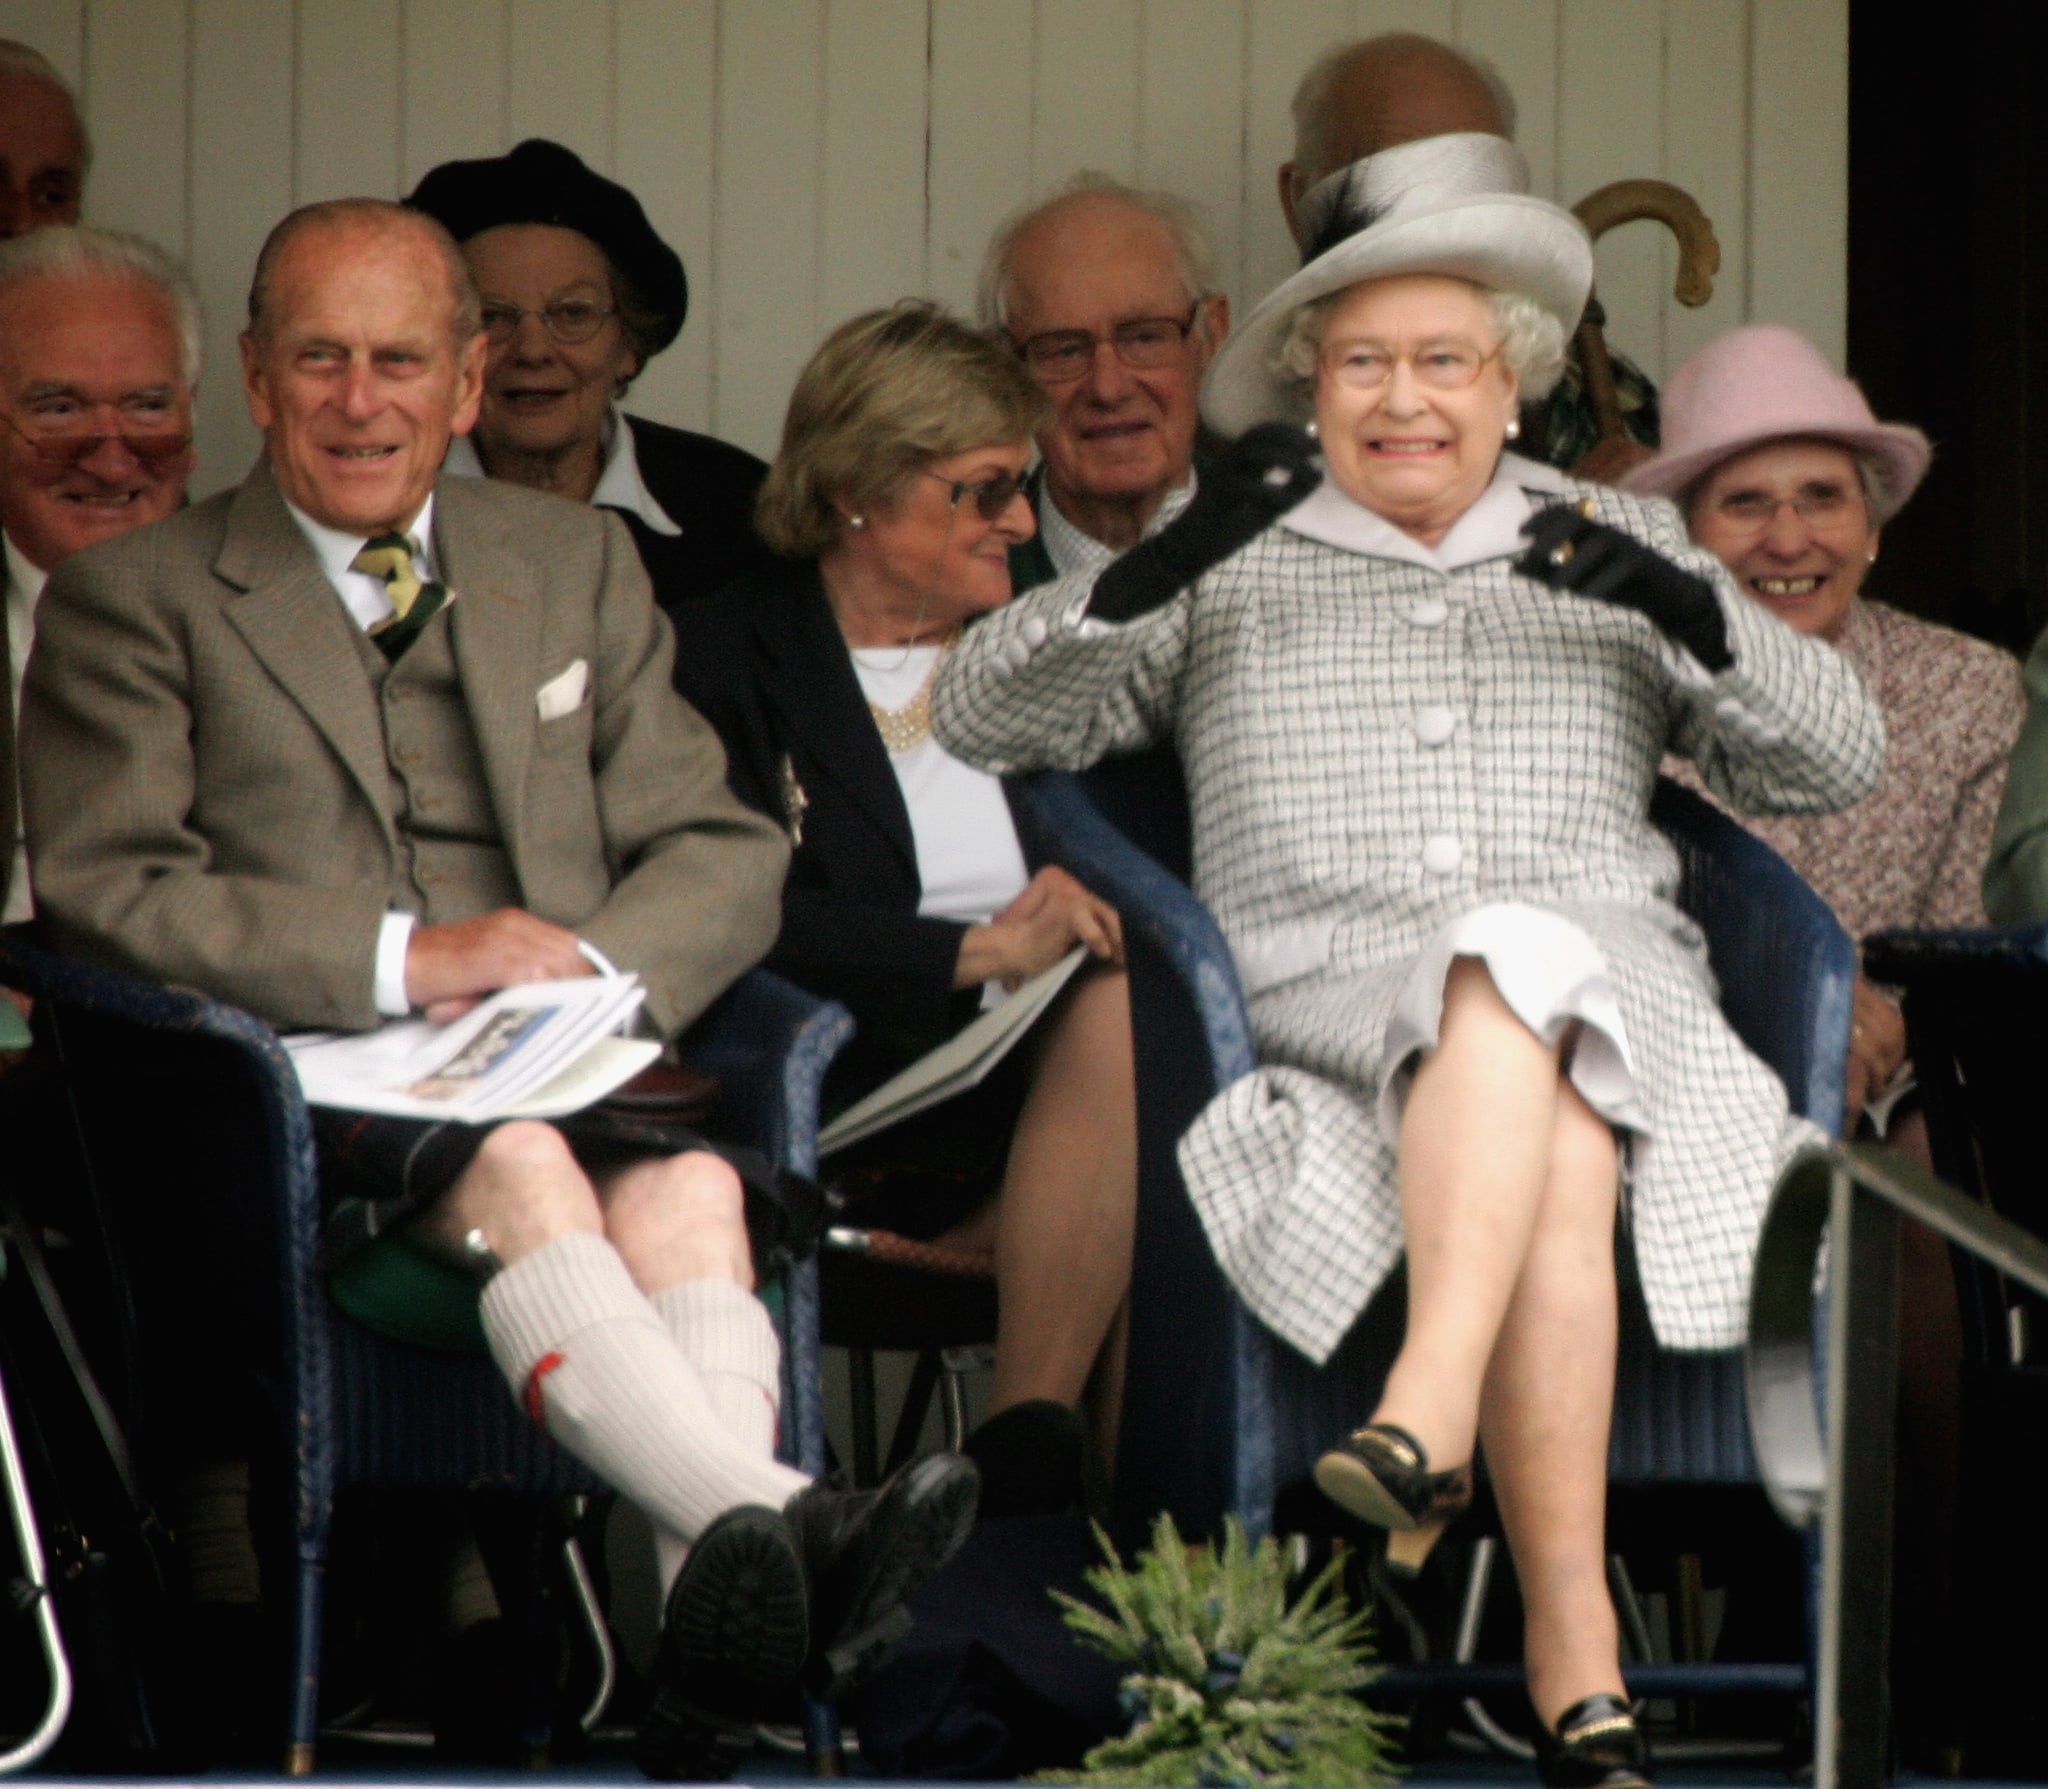 Queen Elizabeth II reacts at the Braemar Gathering in 2006